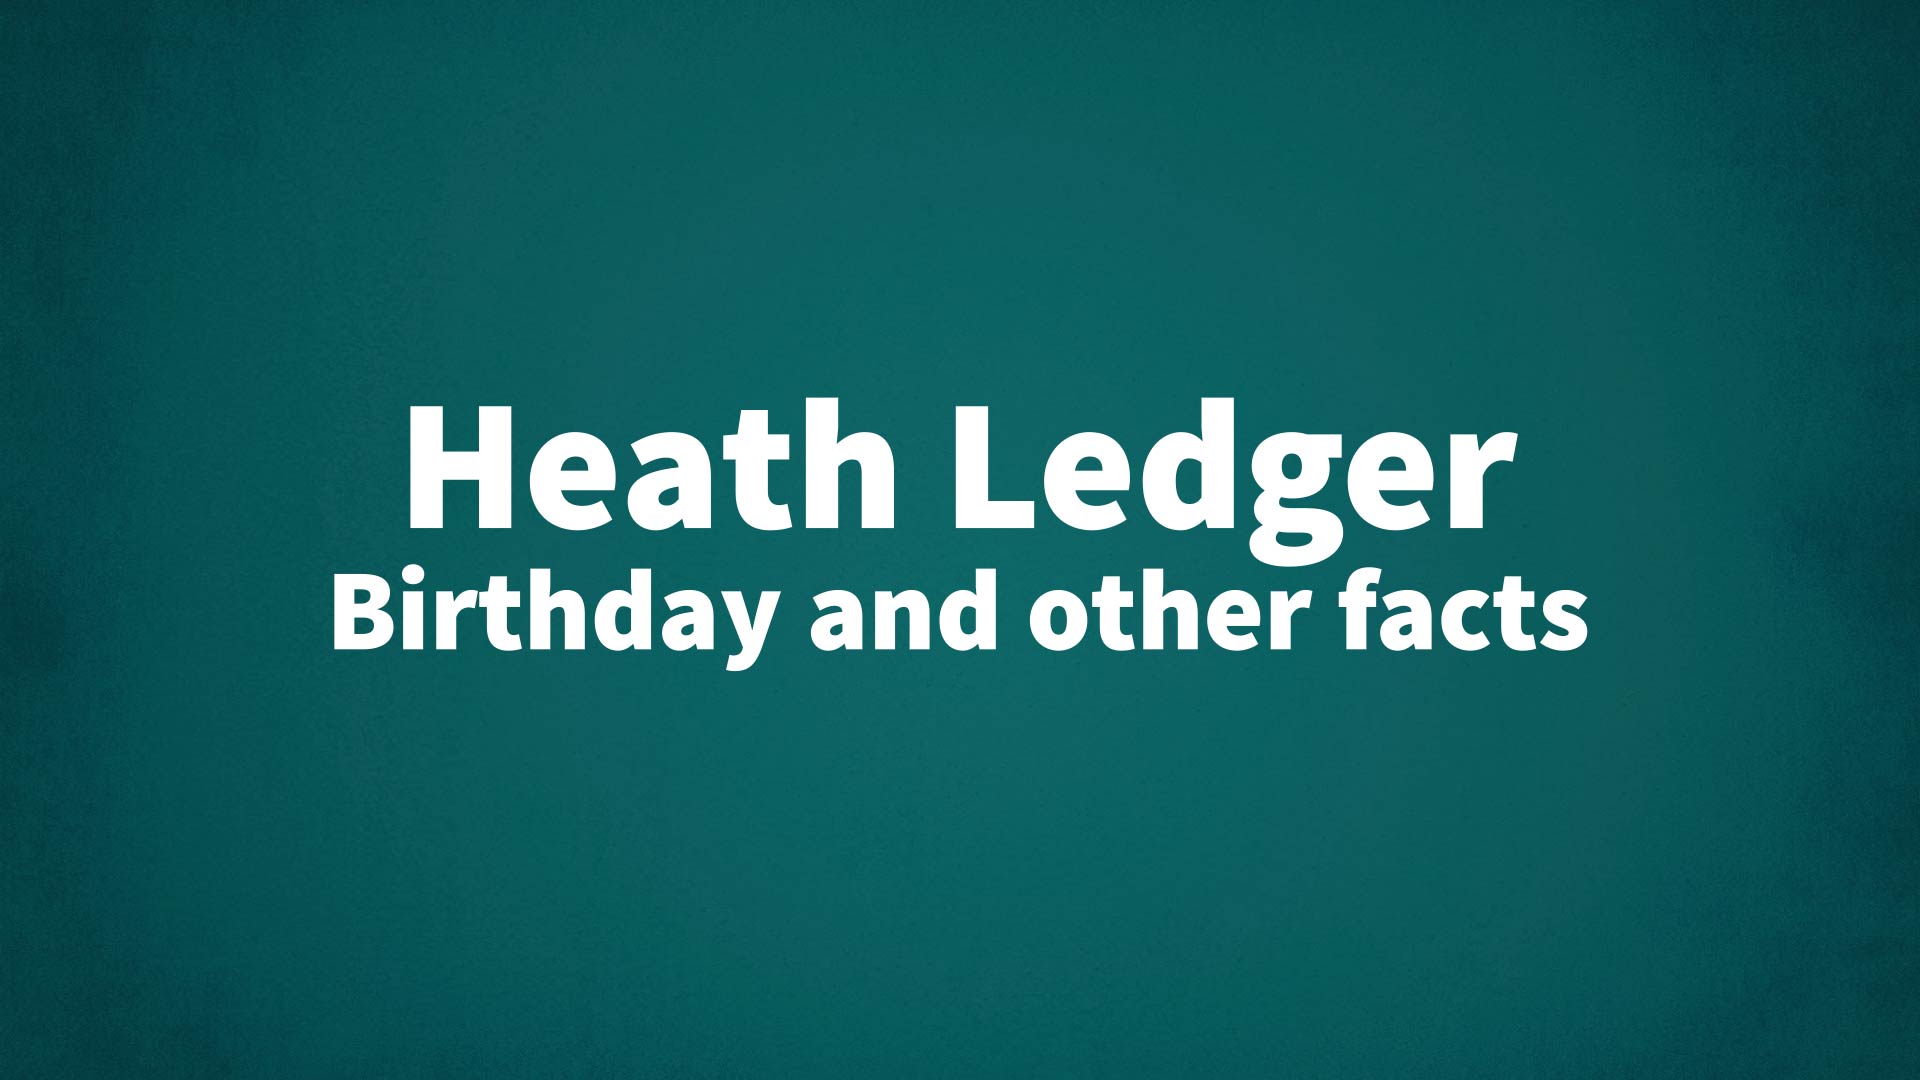 Heath Ledger - Wikipedia